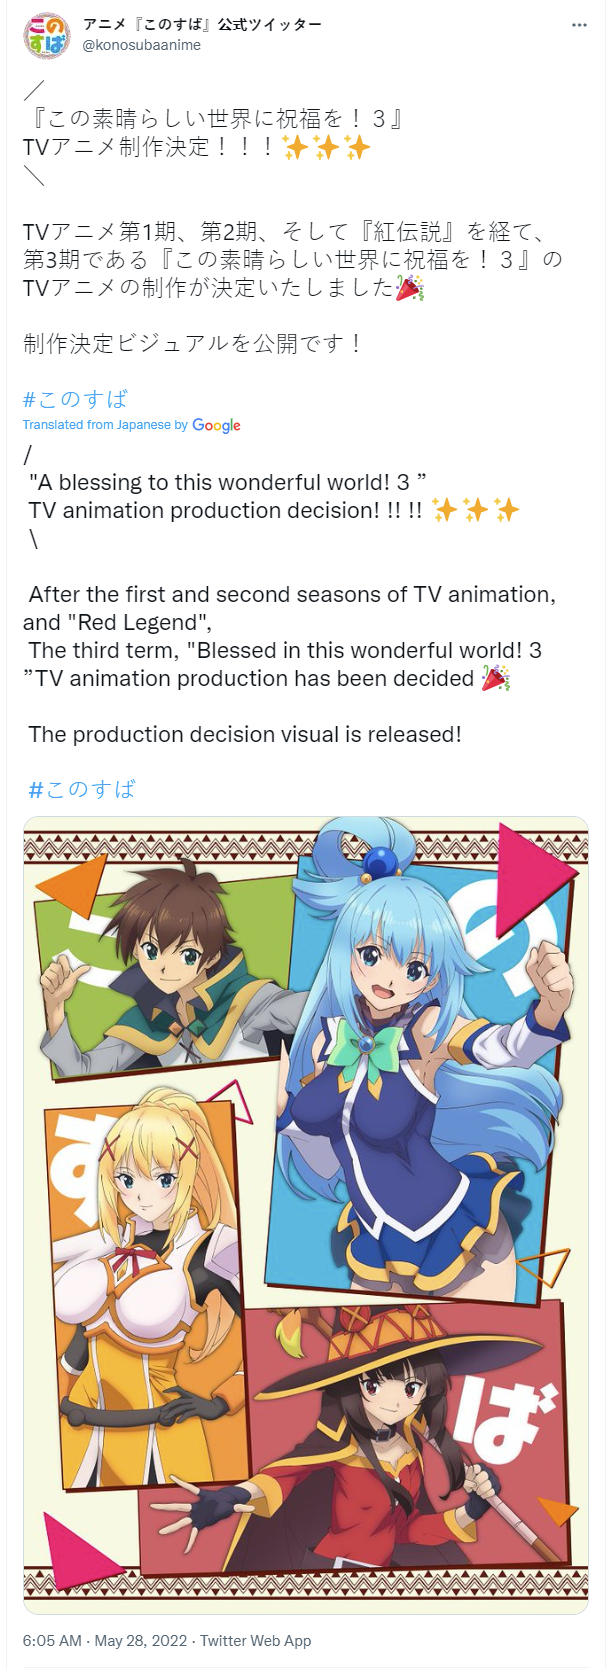 Konosuba Anime Confirms 3rd Season, Anime Adaptation of Konosuba: An  Explosion on This Wonderful World! Spinoff Novels - News - Anime News  Network